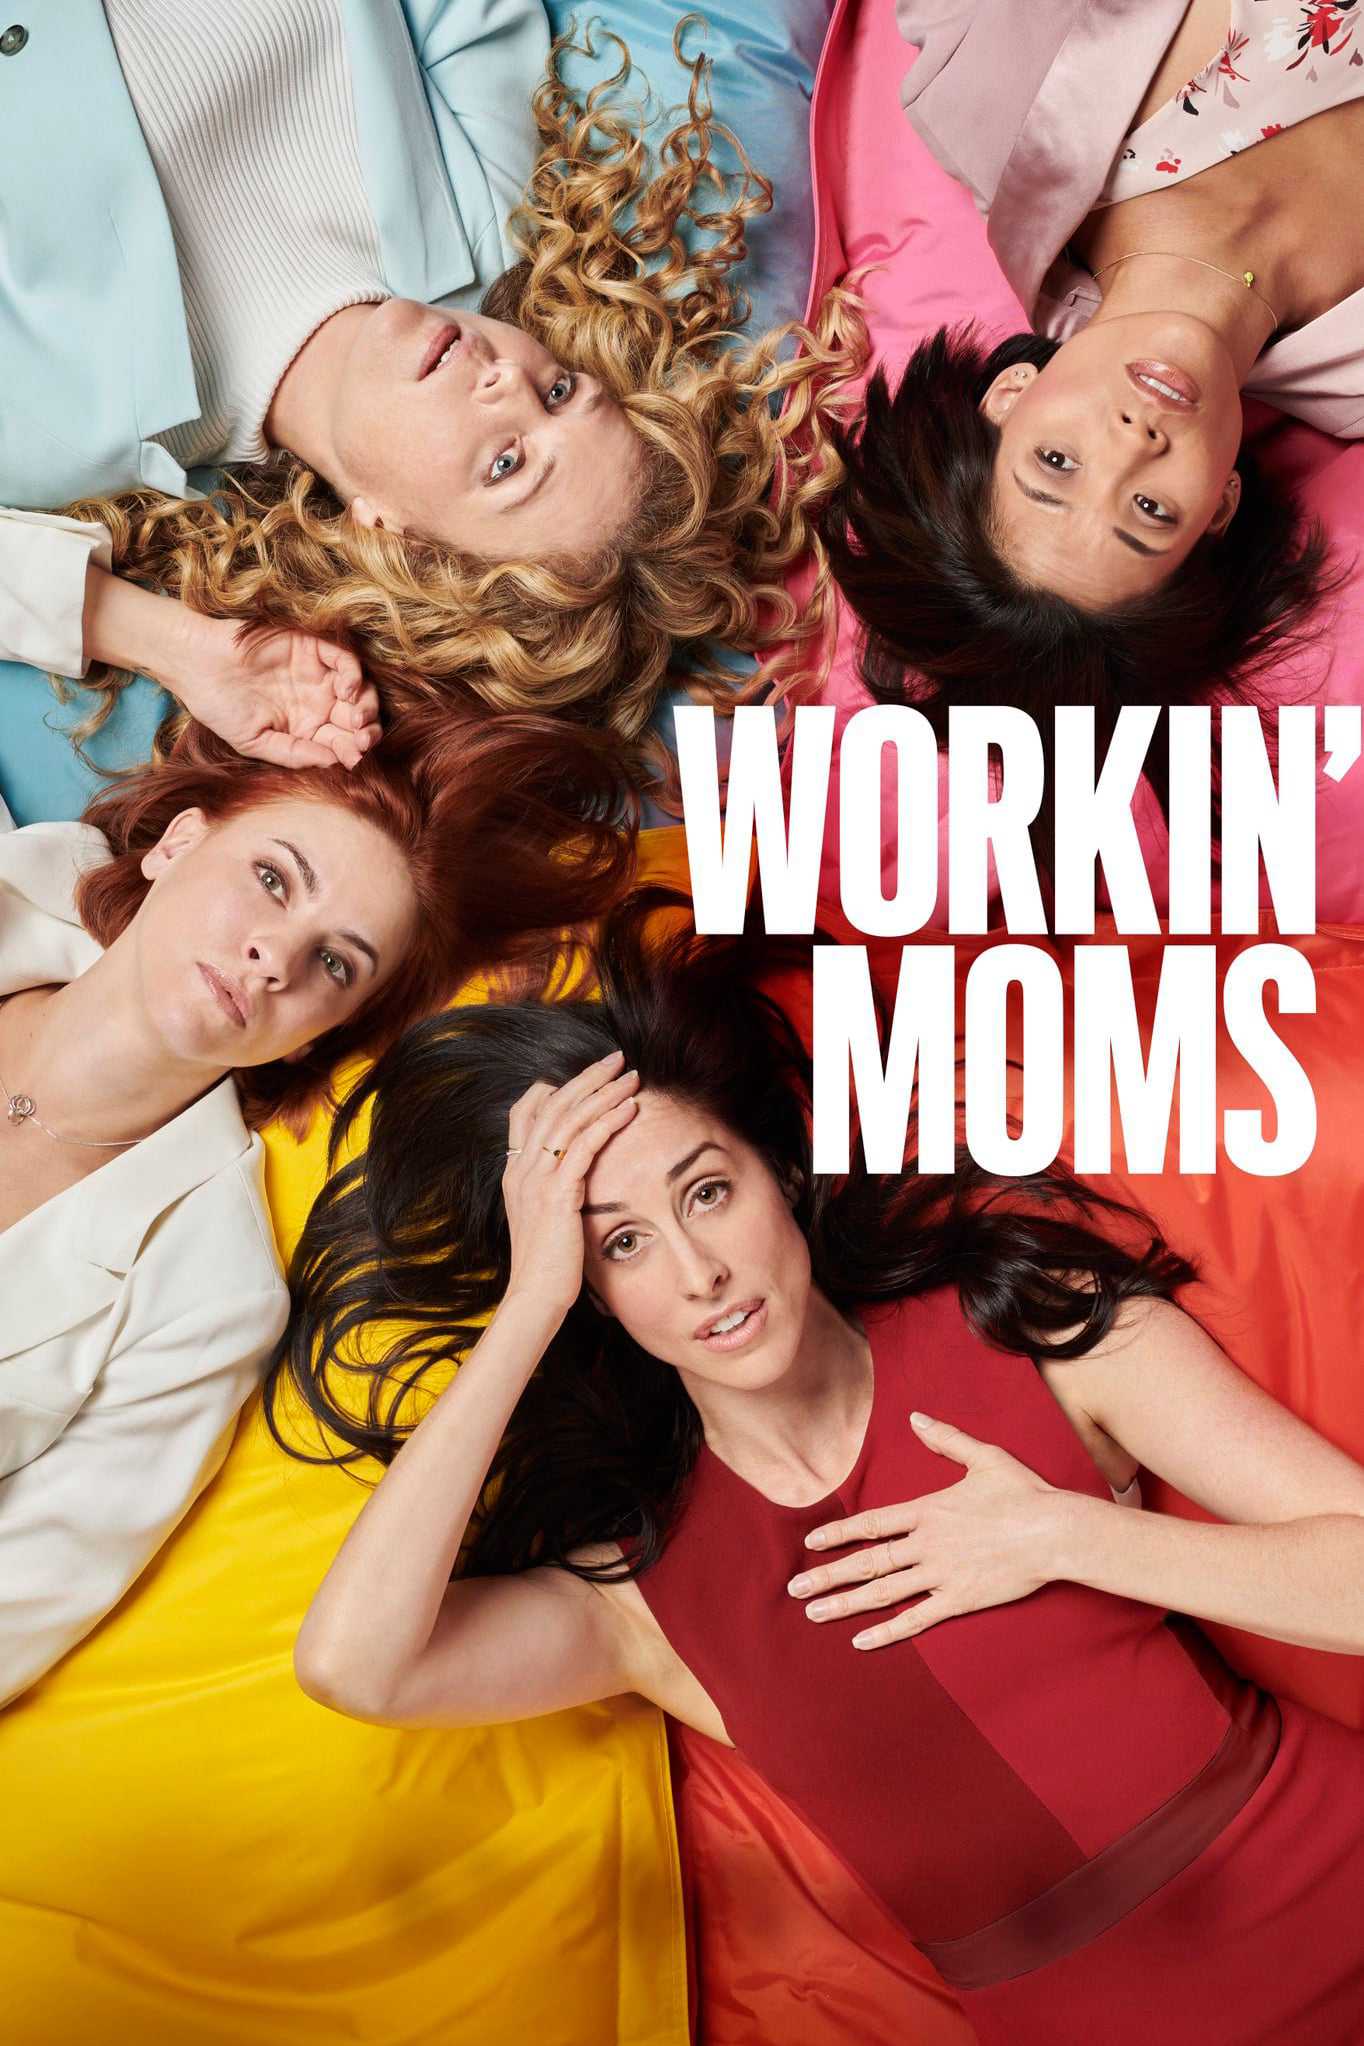 Những bà mẹ siêu nhân (phần 1) - Workin' moms (season 1)